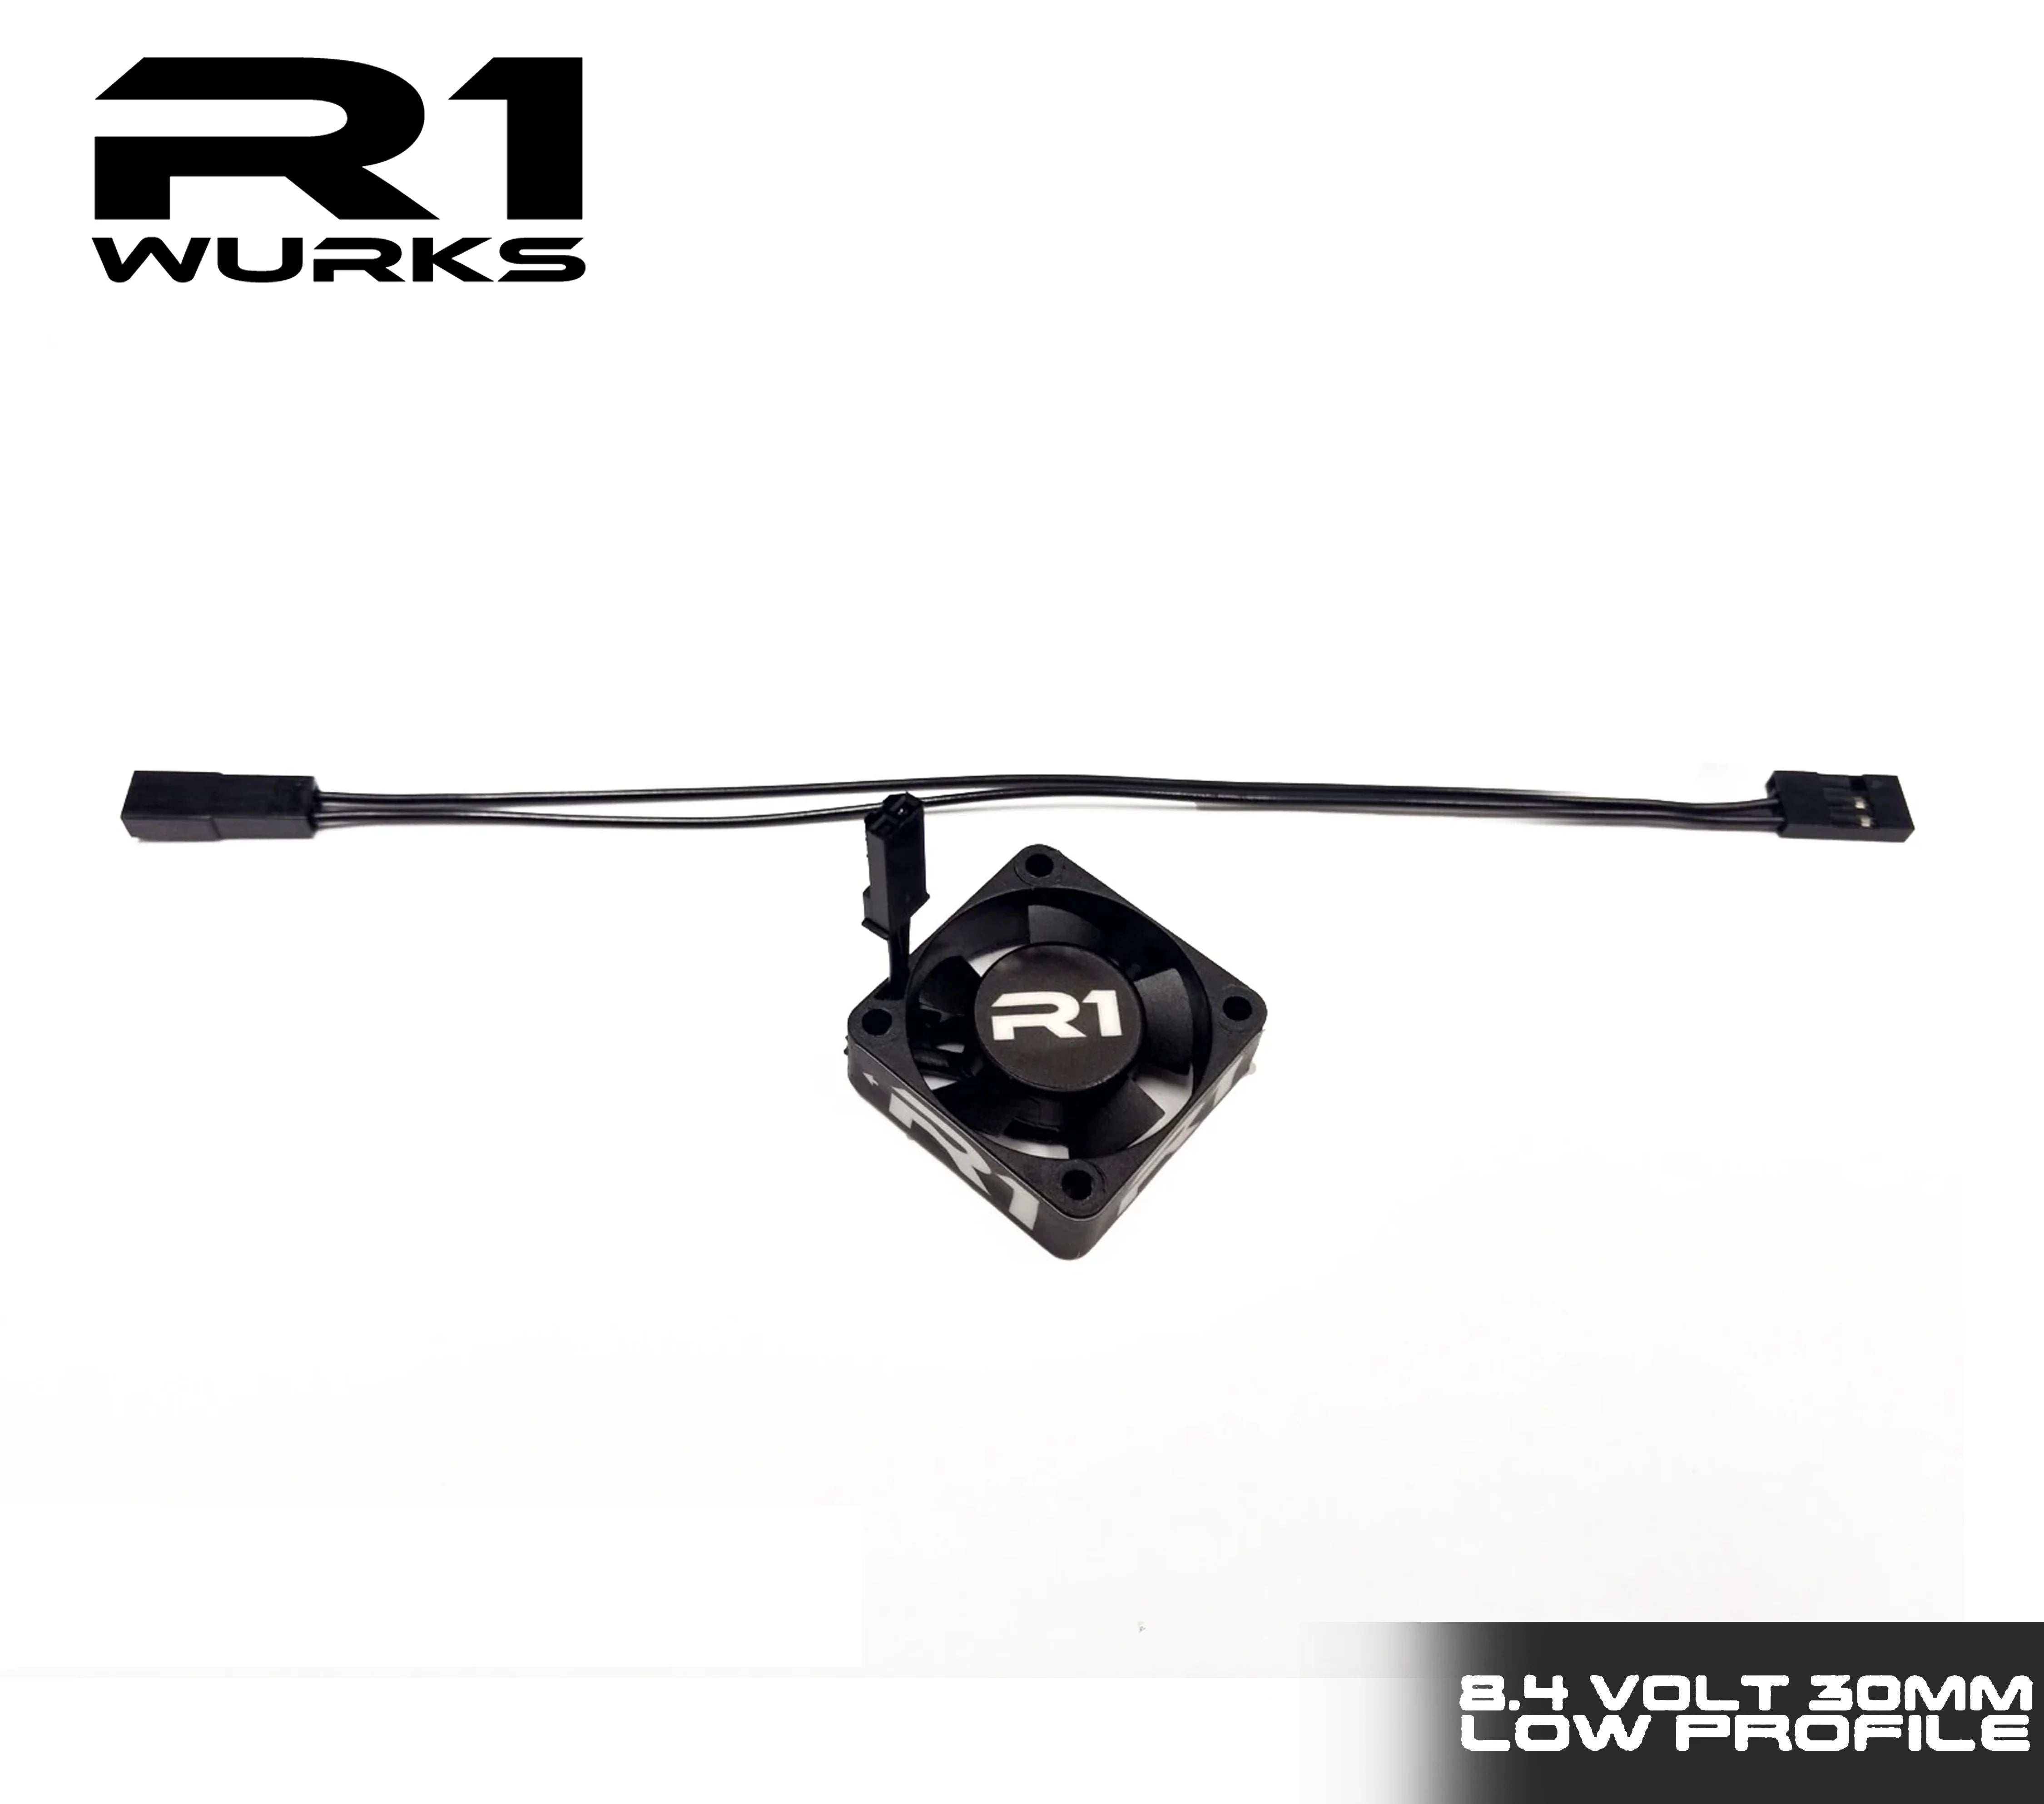 R1 Wurks 060006 30mm 8.4V Low Profile Premium Fan